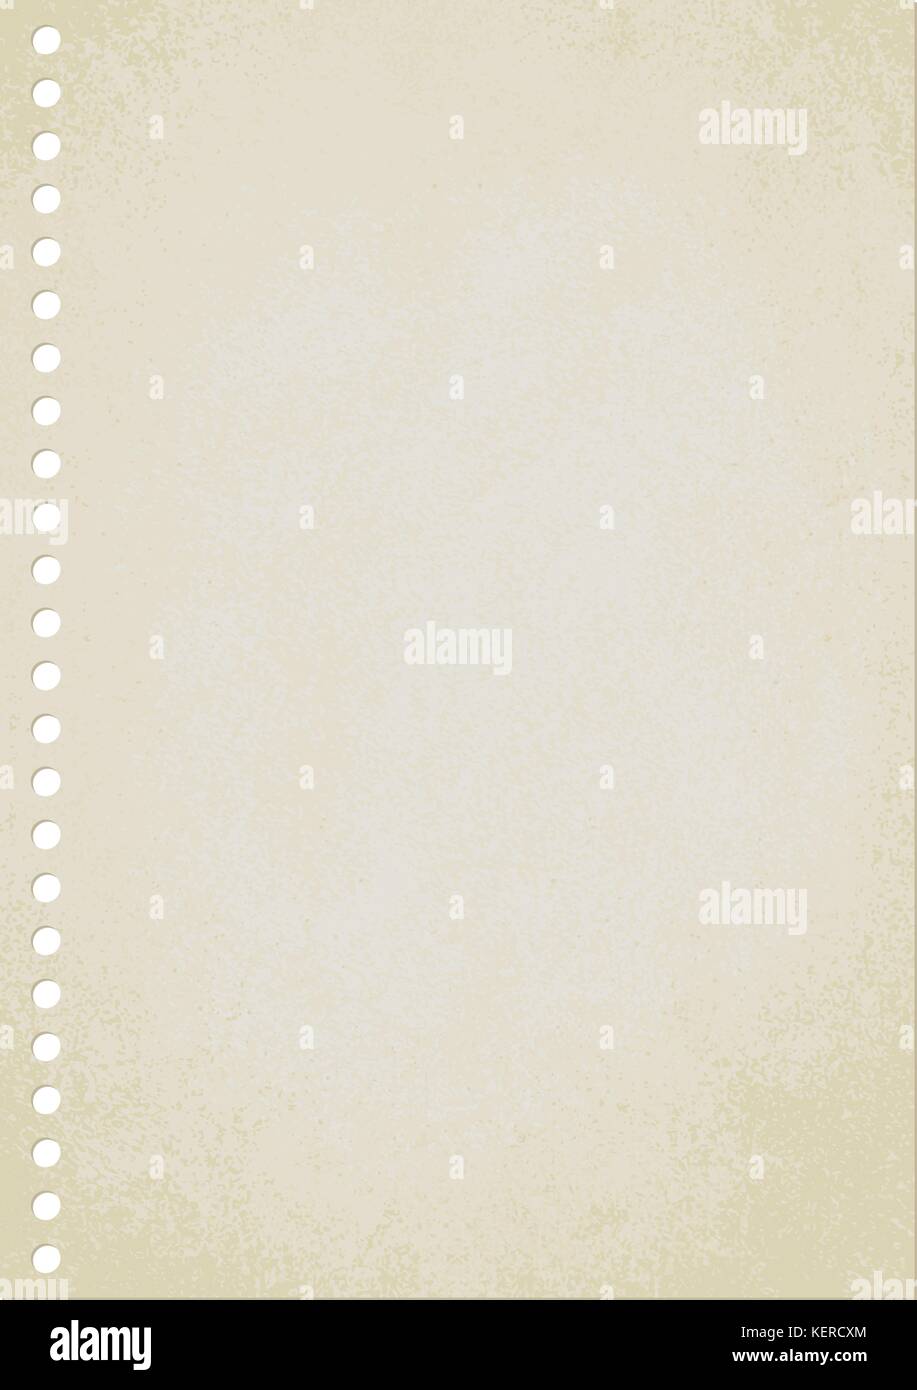 Feuille de papier vide vintage background vector. Illustration de Vecteur